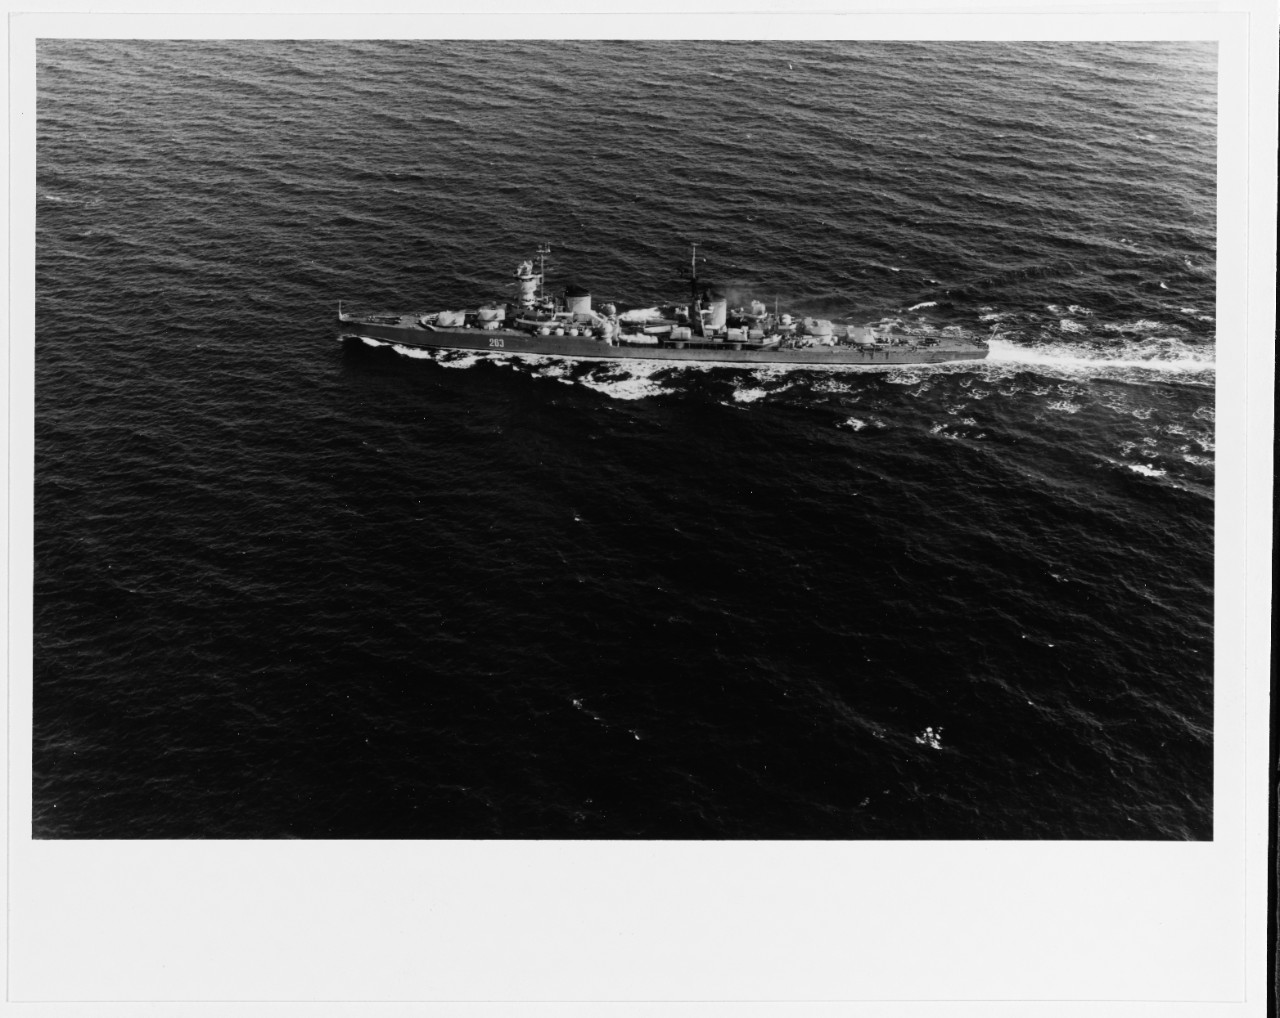 KOMSOMOLETS (Soviet light cruiser, 1947-- )